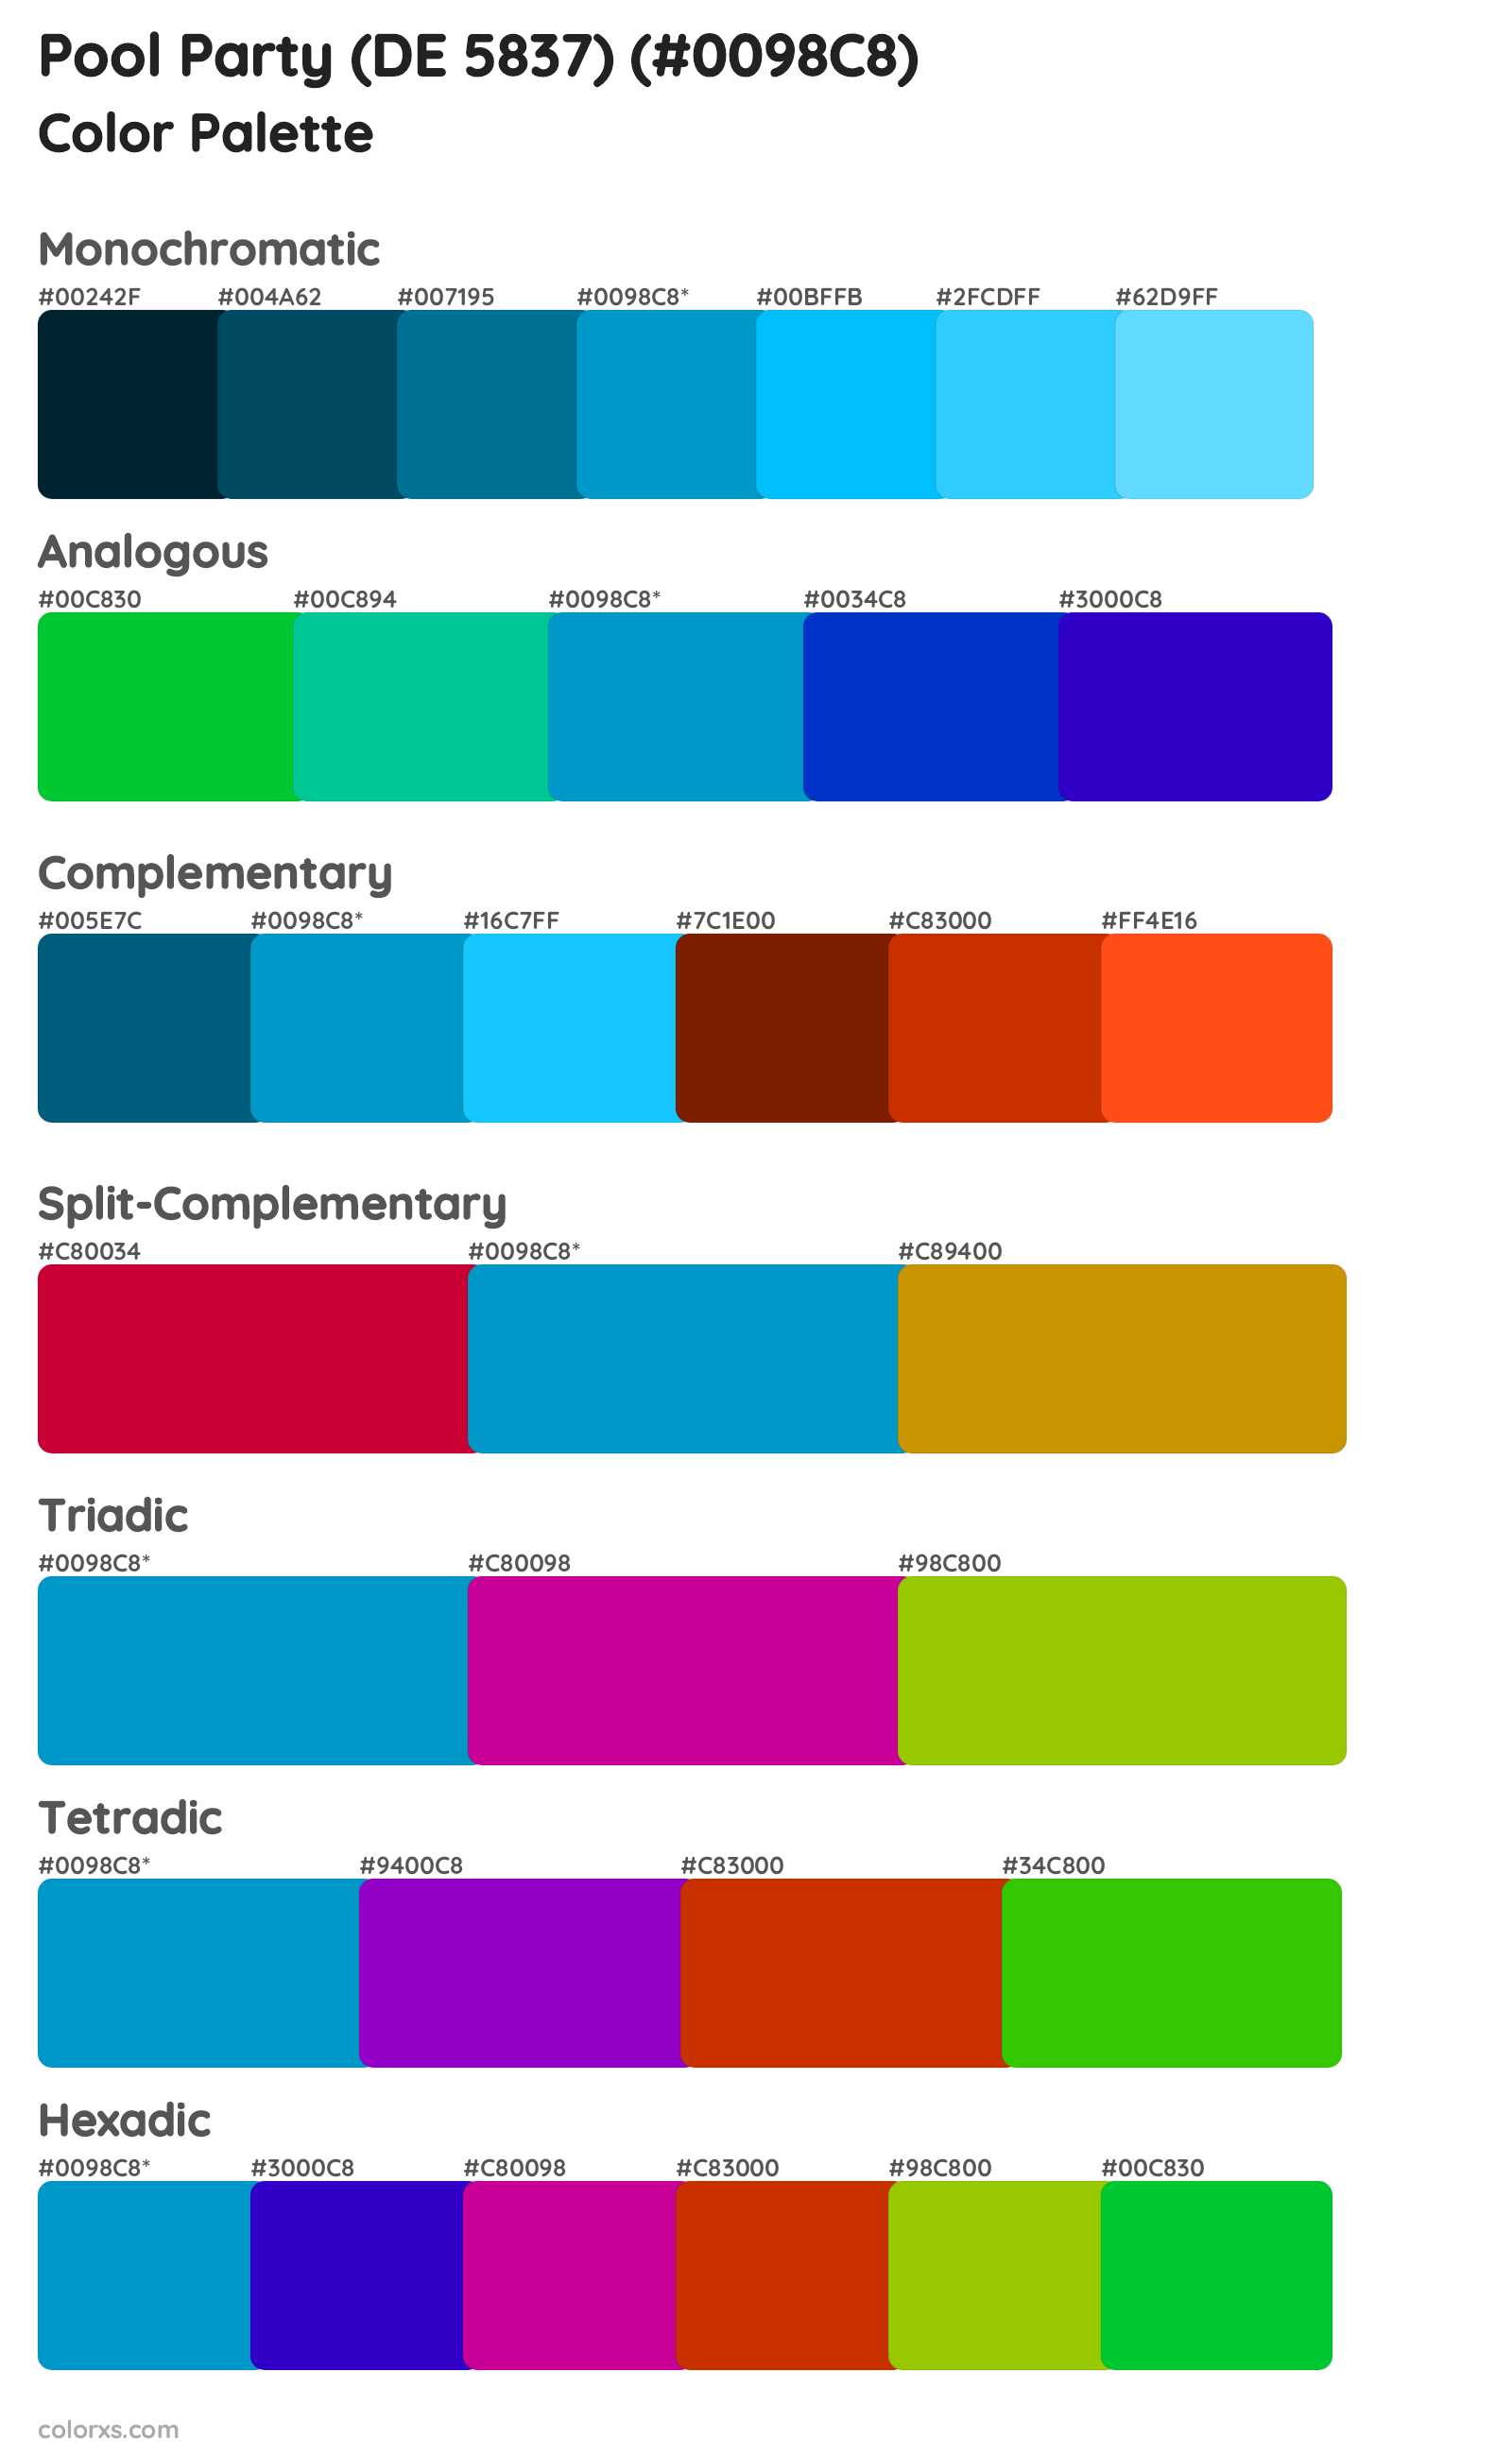 Pool Party (DE 5837) Color Scheme Palettes